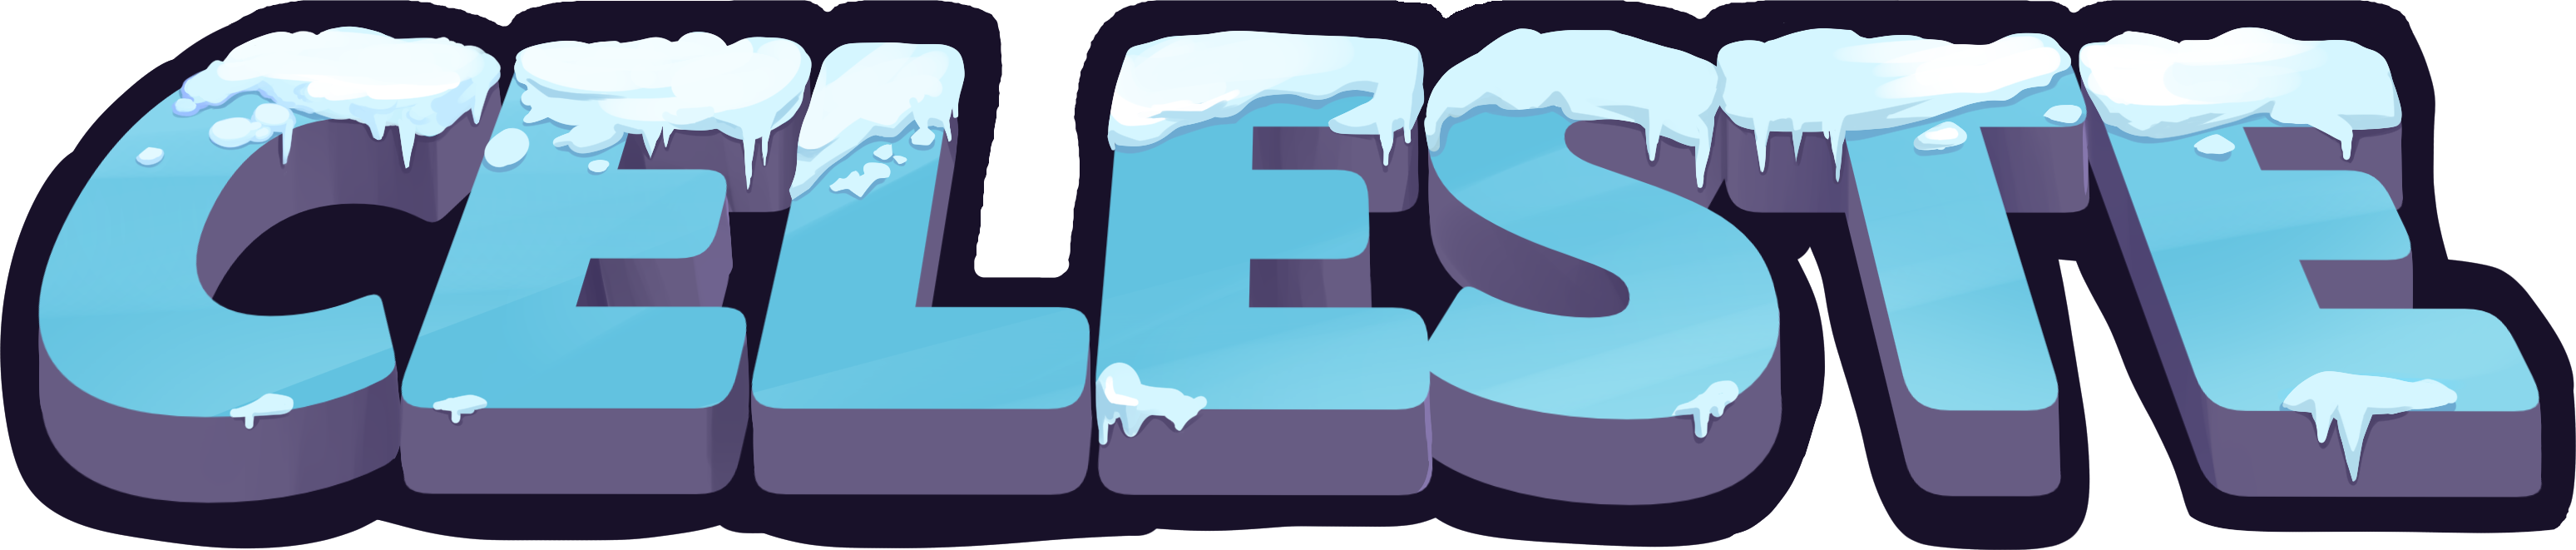 Celeste Game Logo PNG Image